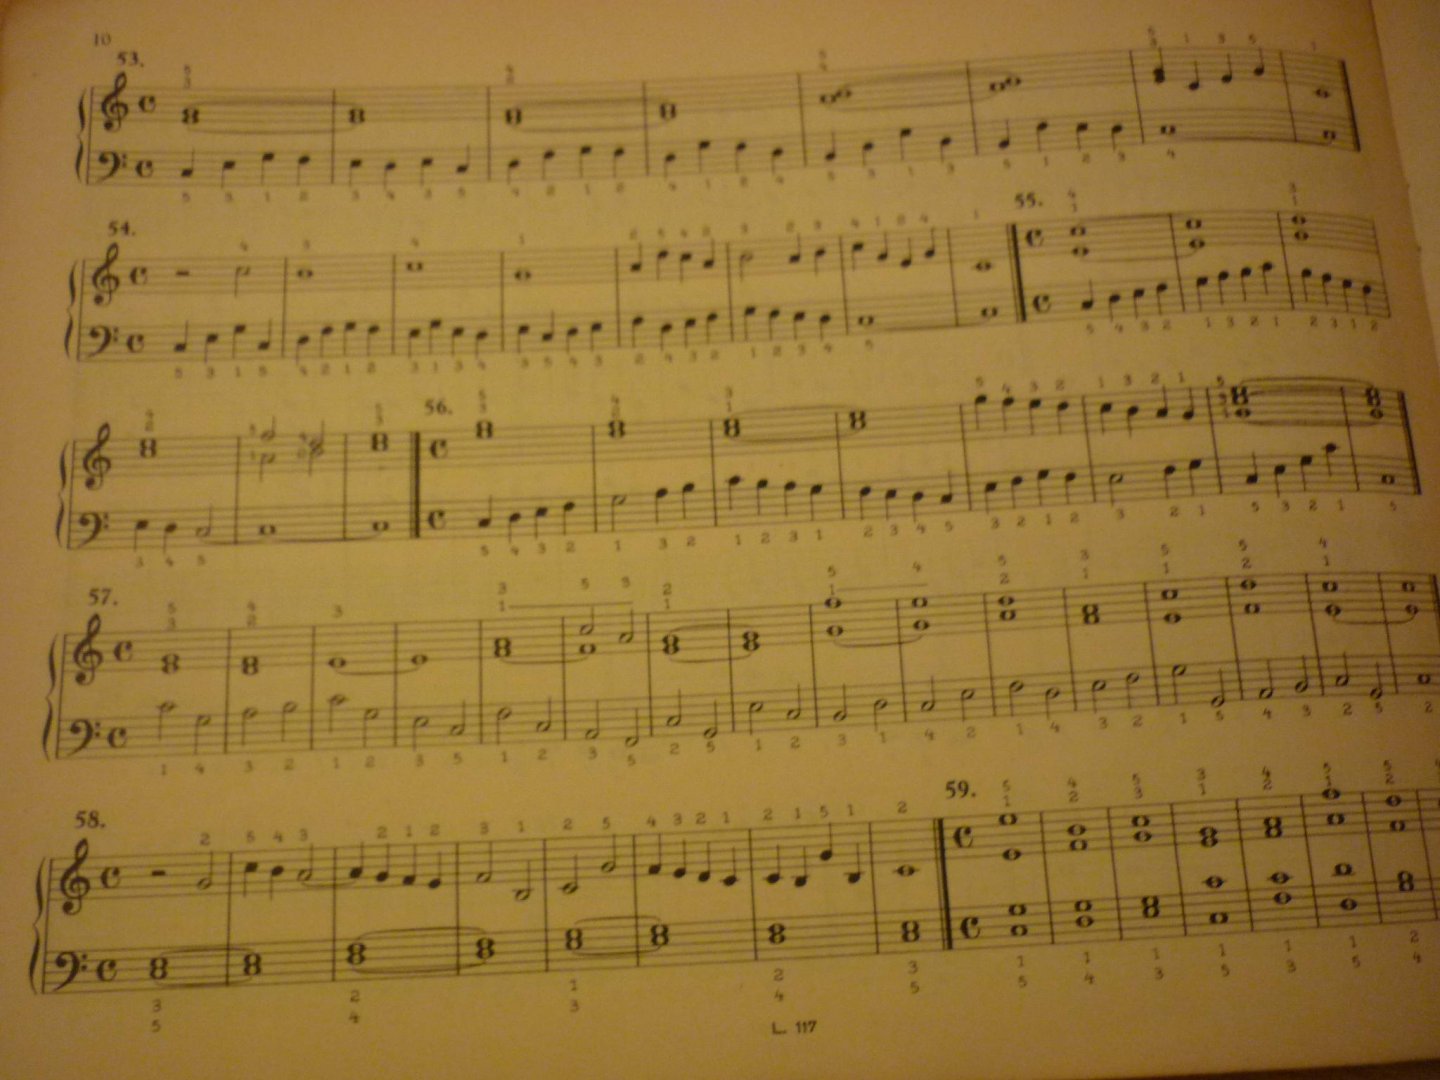 Kruiys; M.H. van 't - 276 Oefeningen voor eerstbeginnenden voor Orgel of Harmonium; Benevens 50 Pedaaloefeningen - Opus 20 - Deel 1